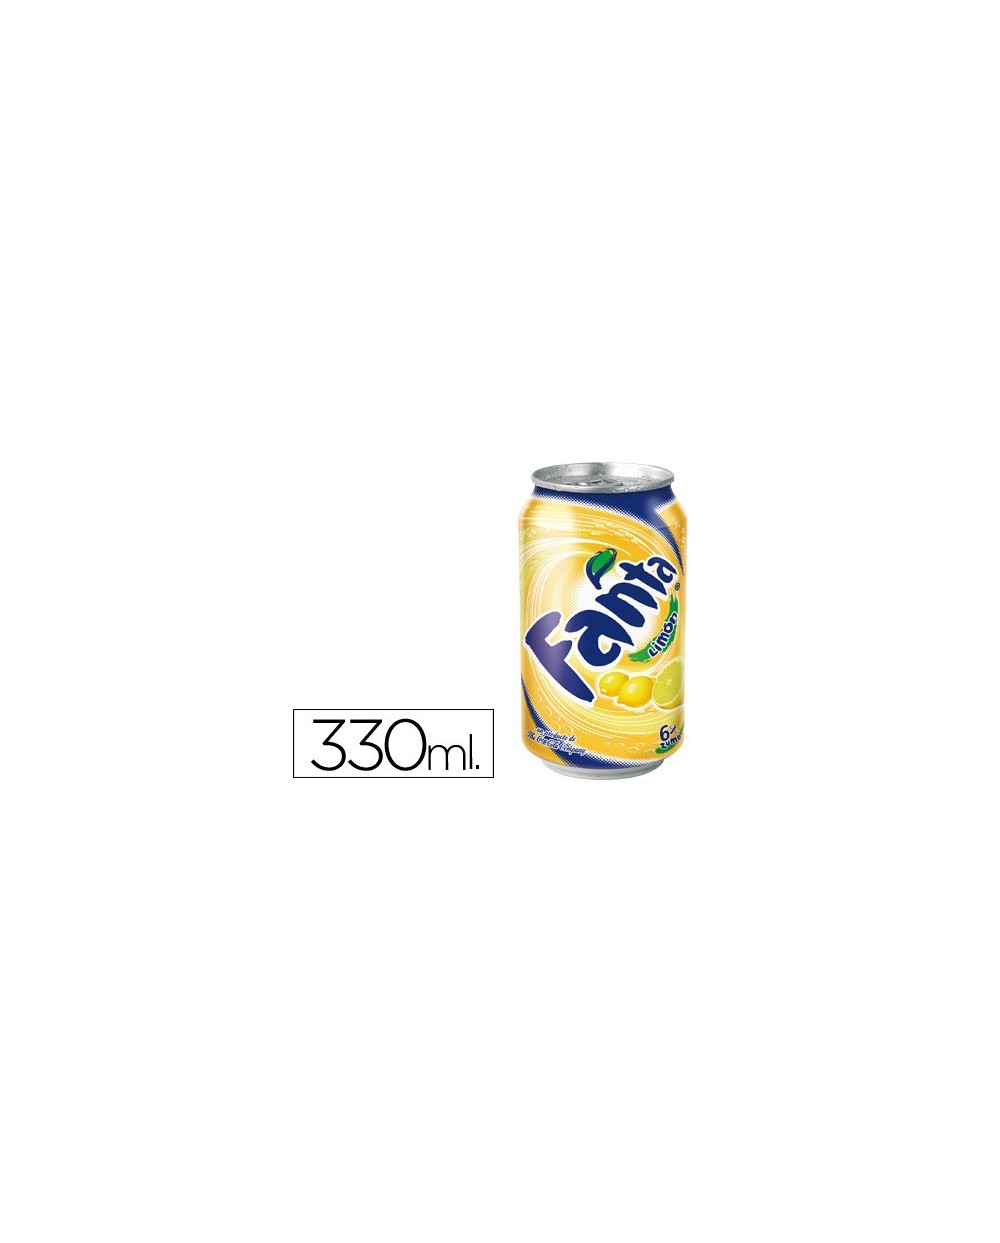 Refresco fanta limon lata 330 ml